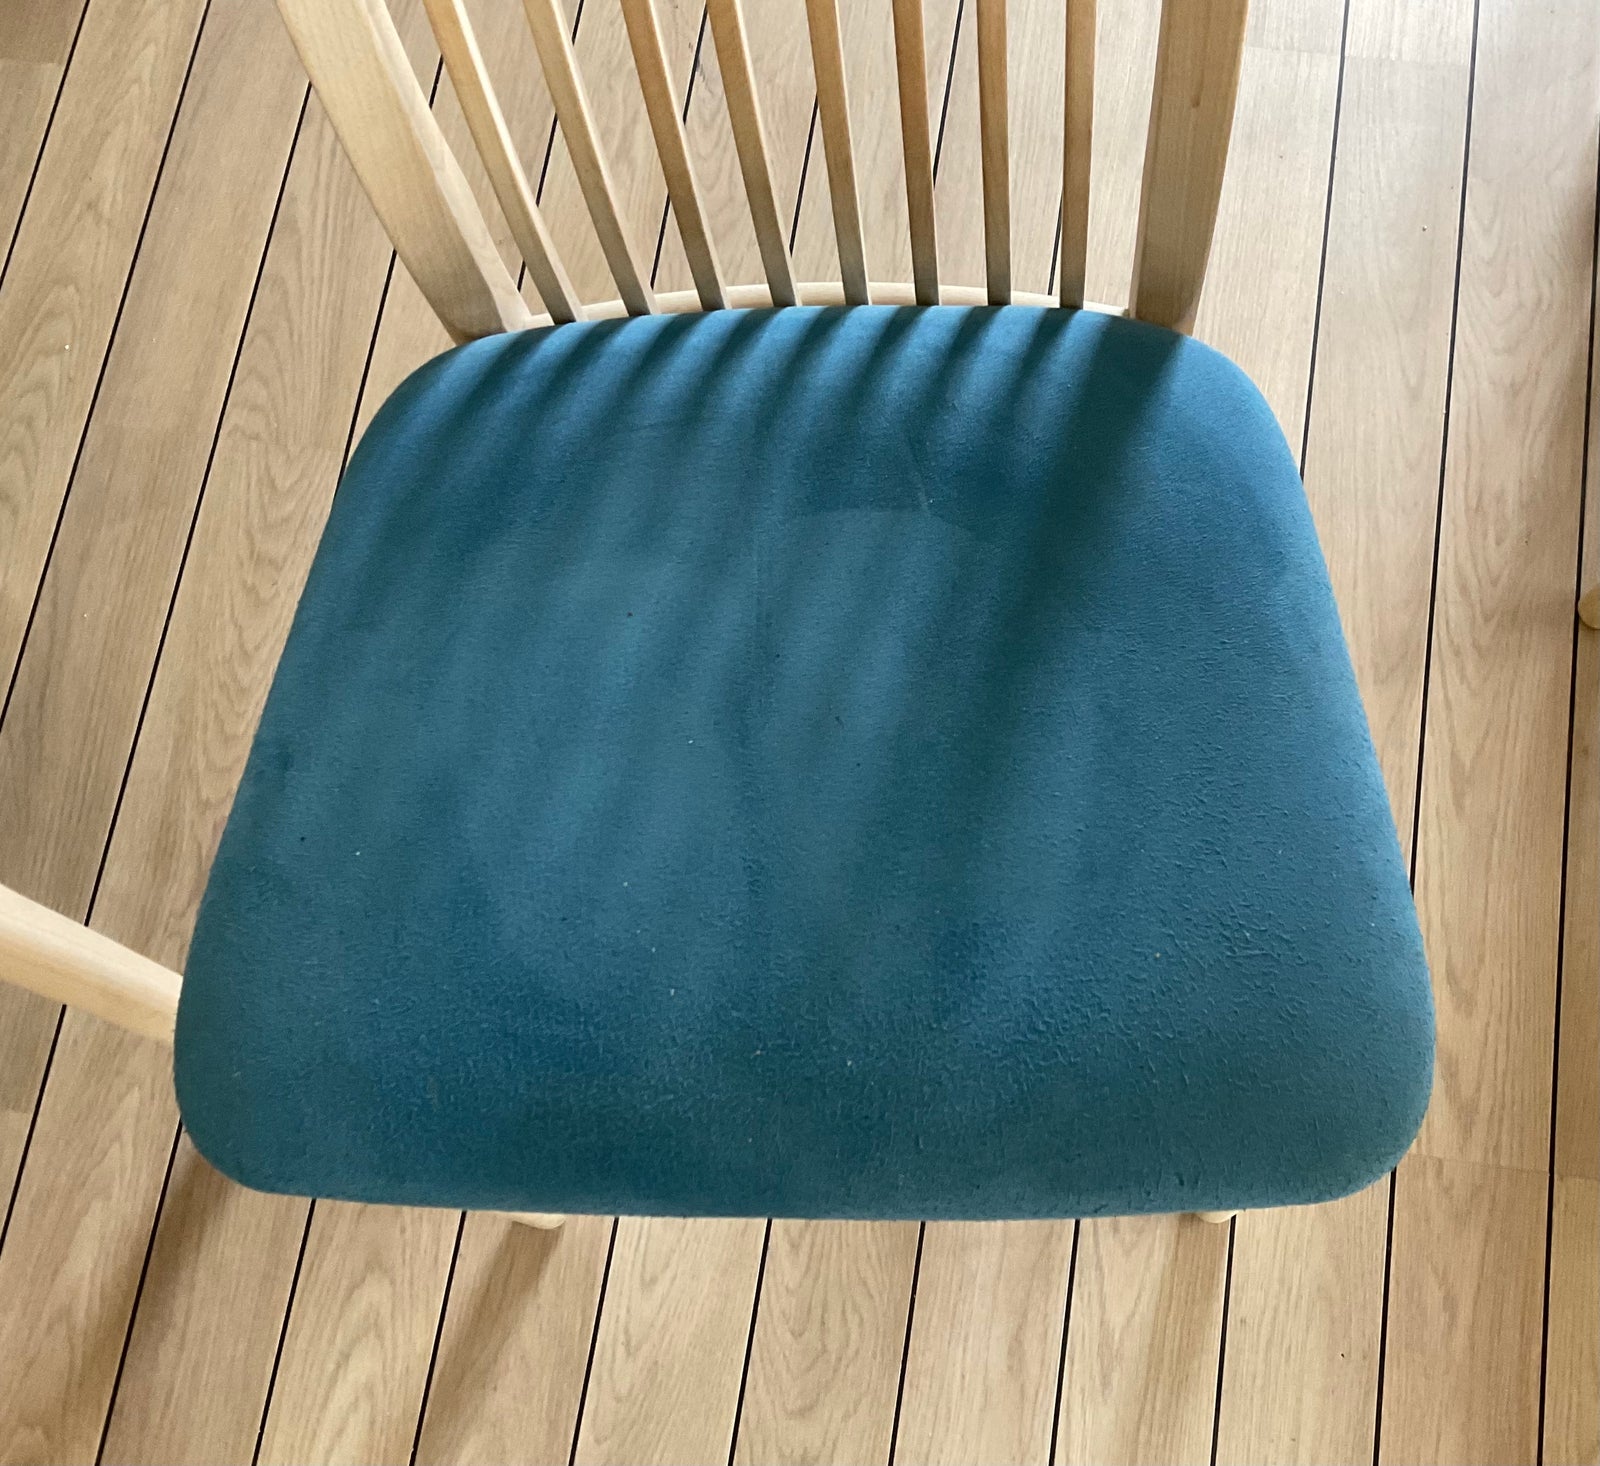 Spisebordsstol, Hvidvasket bøg/Alcantara, b: 50 l: 50